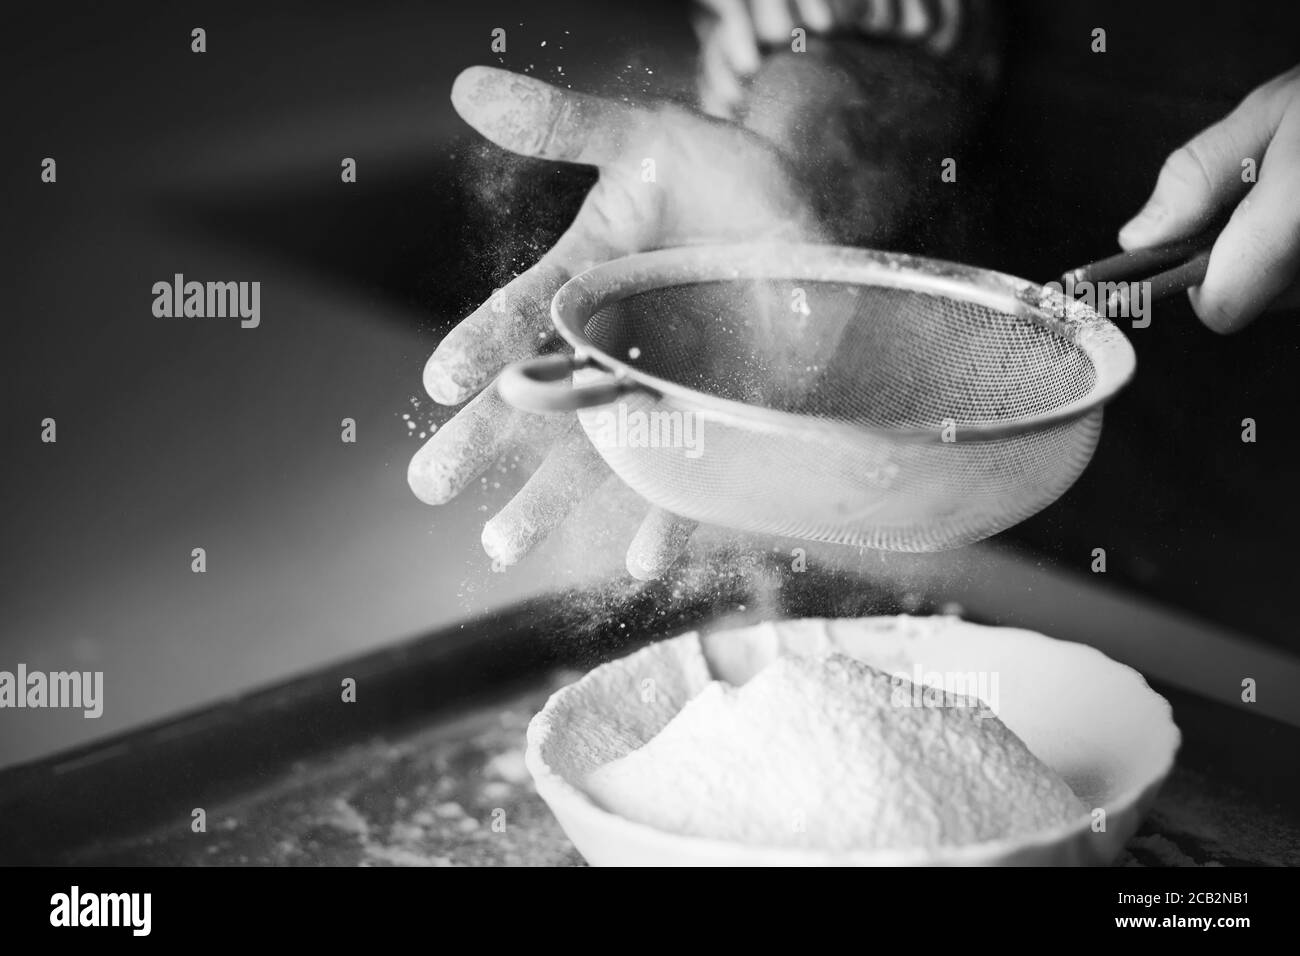 Ein schwarz-weißes Bild eines erfahrenen Küchenchefs, der mit seiner Hand Mehl durch ein Sieb in eine Schüssel sieben lässt. Der Prozess des Kochens. Stockfoto